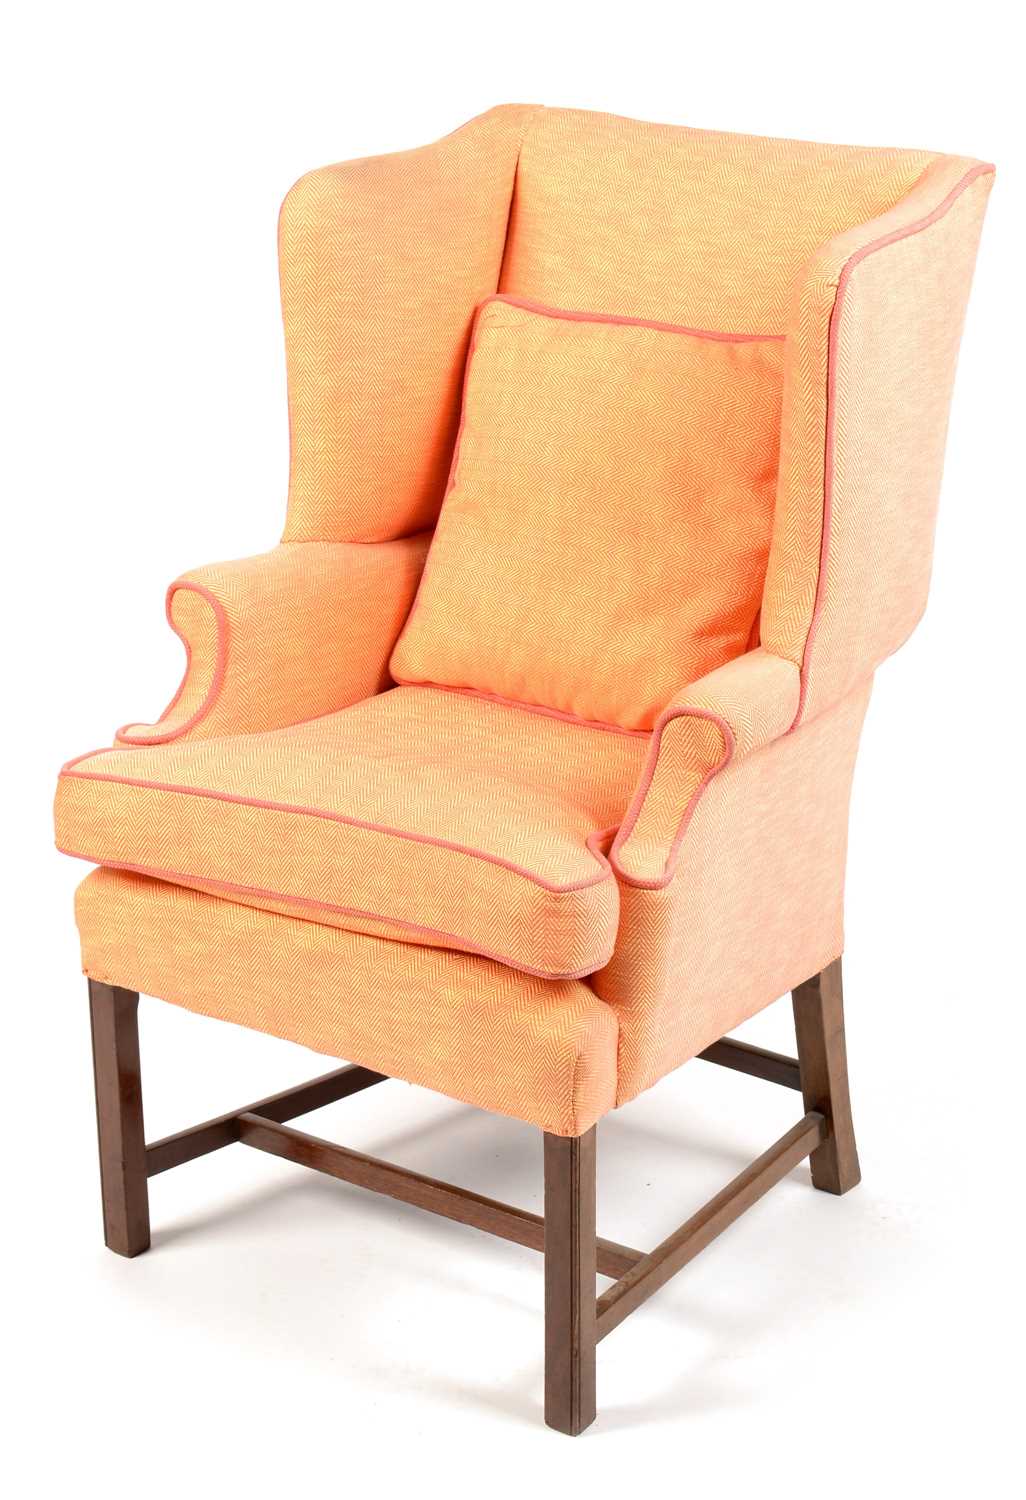 Lot 852 - A Georgian style wingback armchair